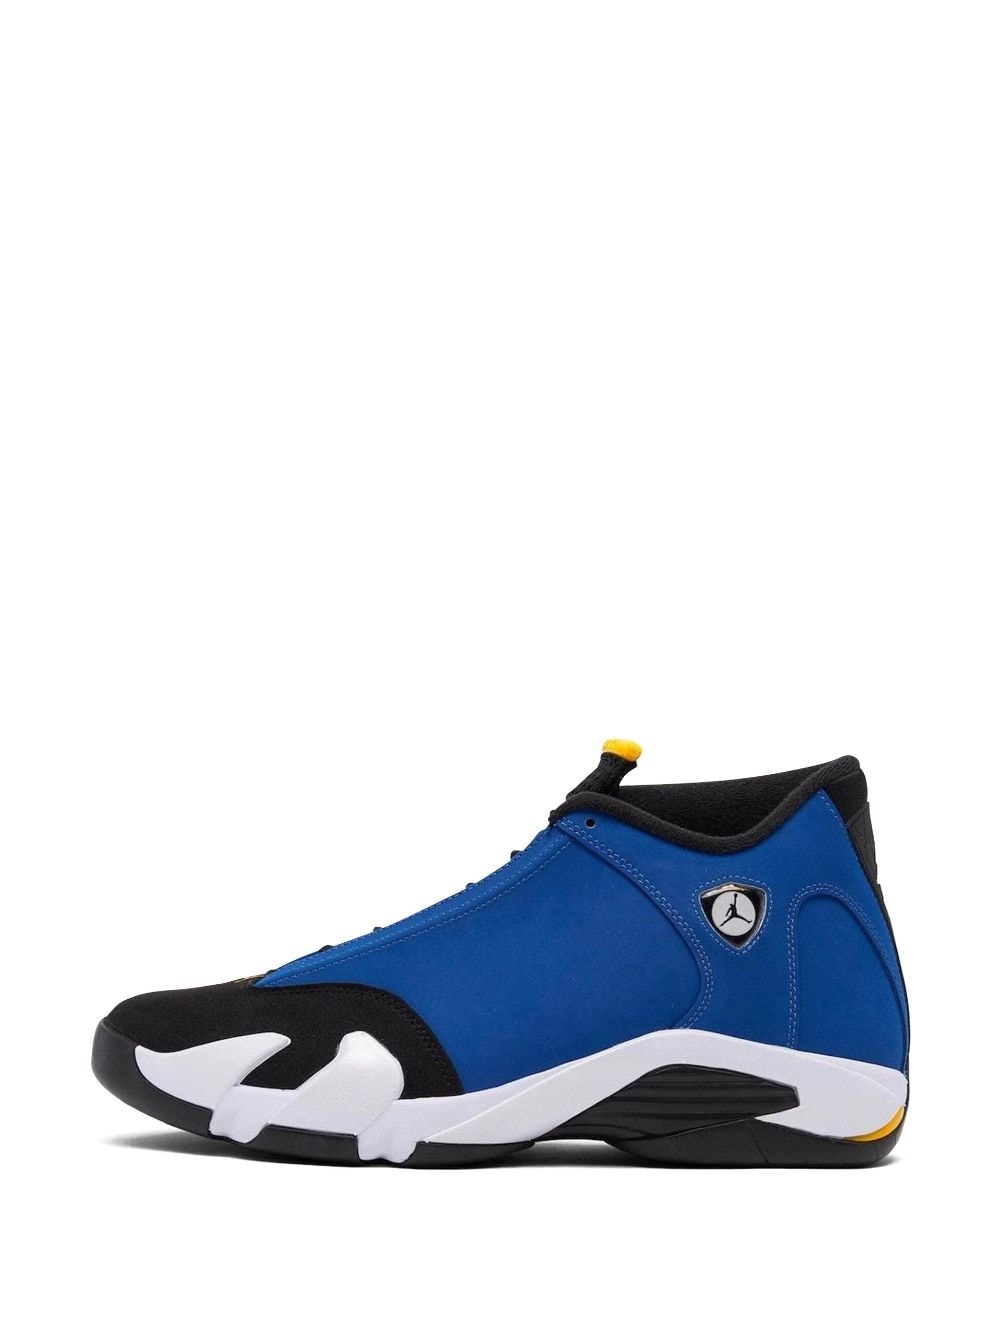 Air Jordan 14 "Laney" sneakers - 5